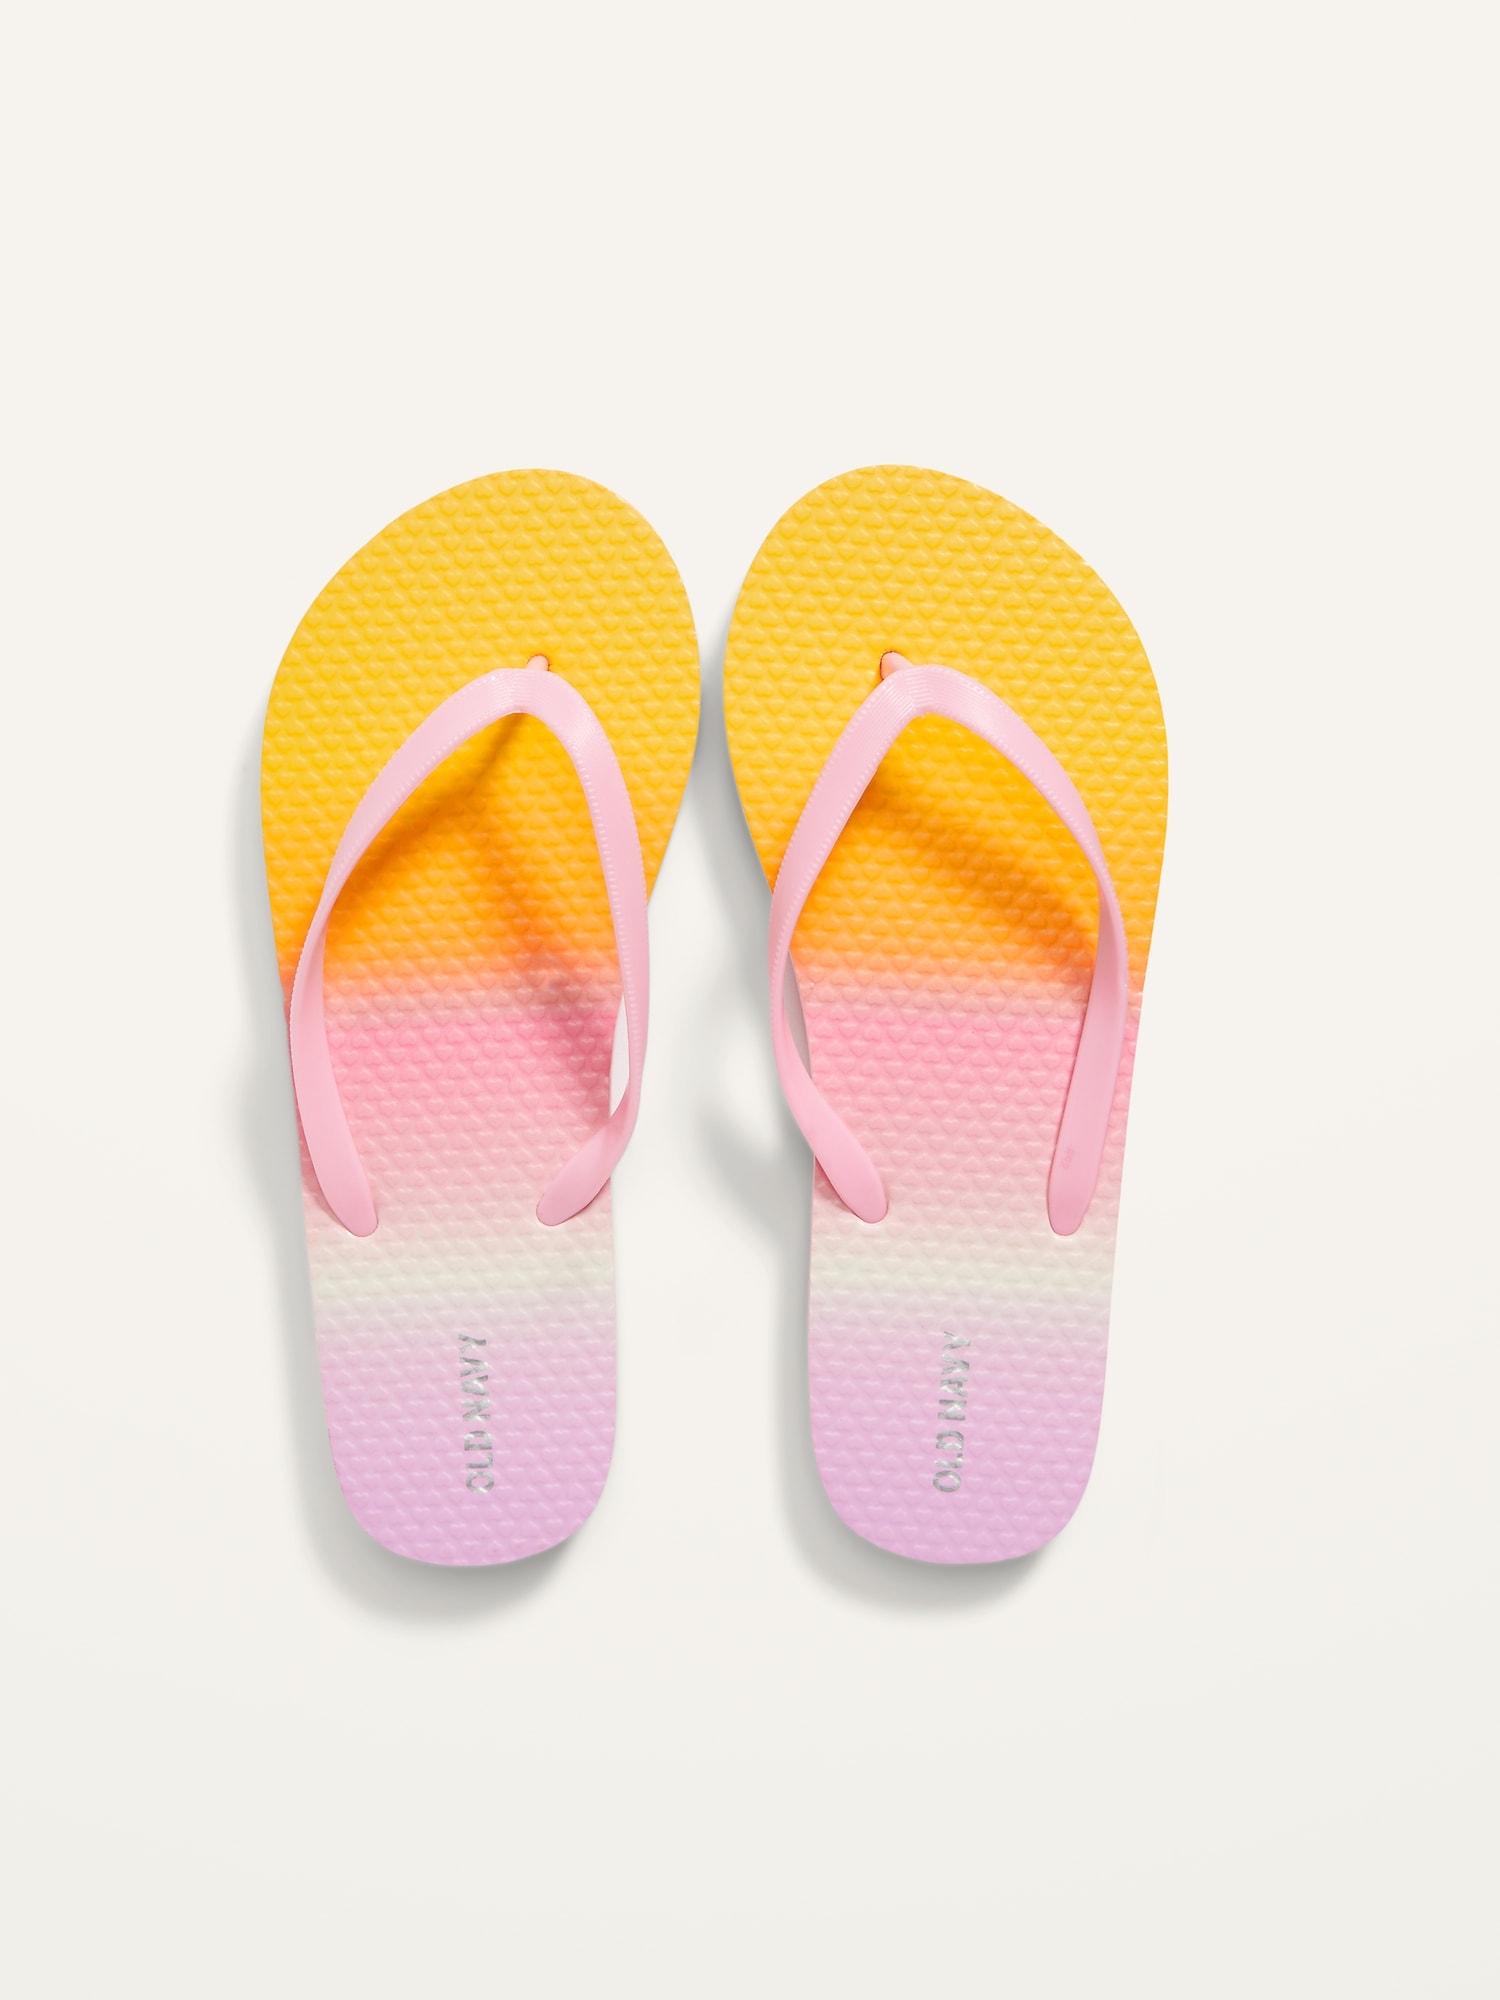 Gender-Neutral Printed Flip-Flop Sandals for Kids